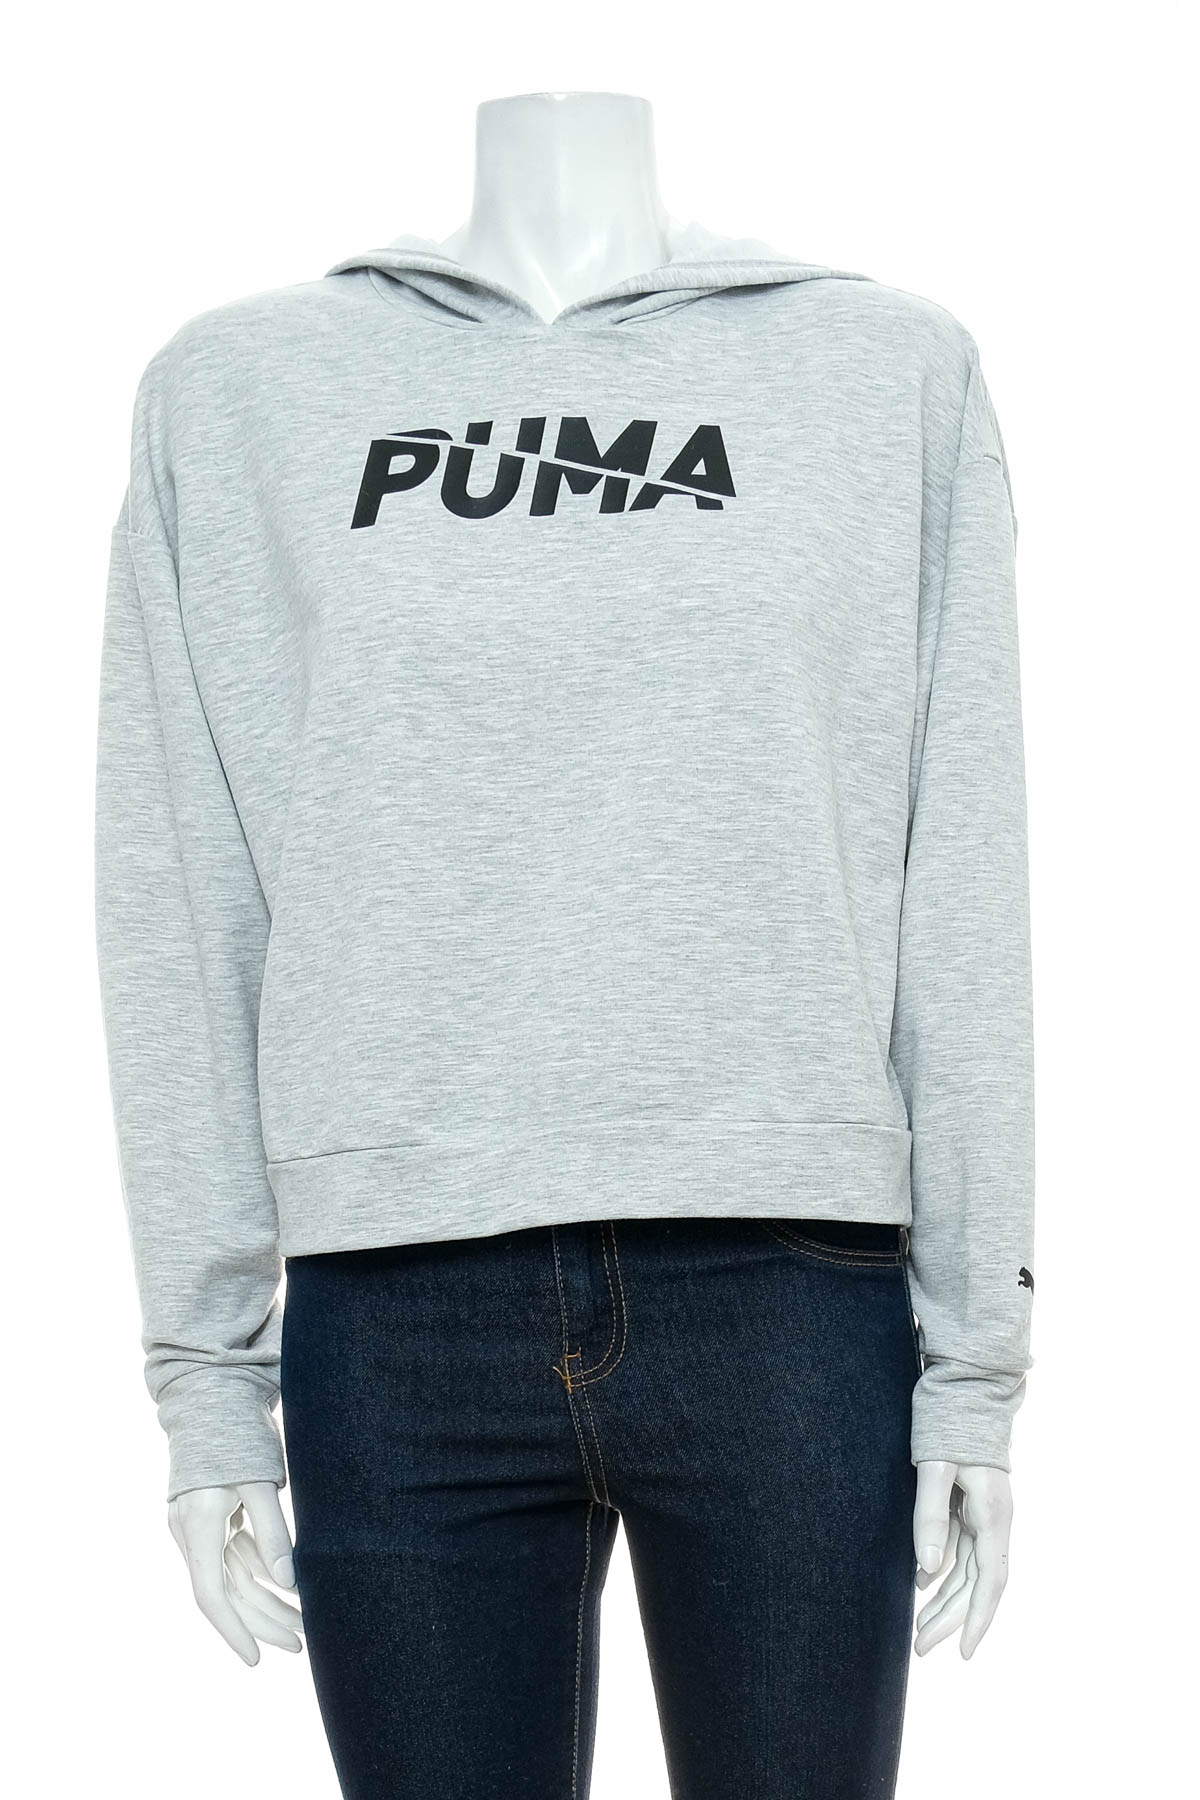 Γυναικείο φούτερ - Puma - 0